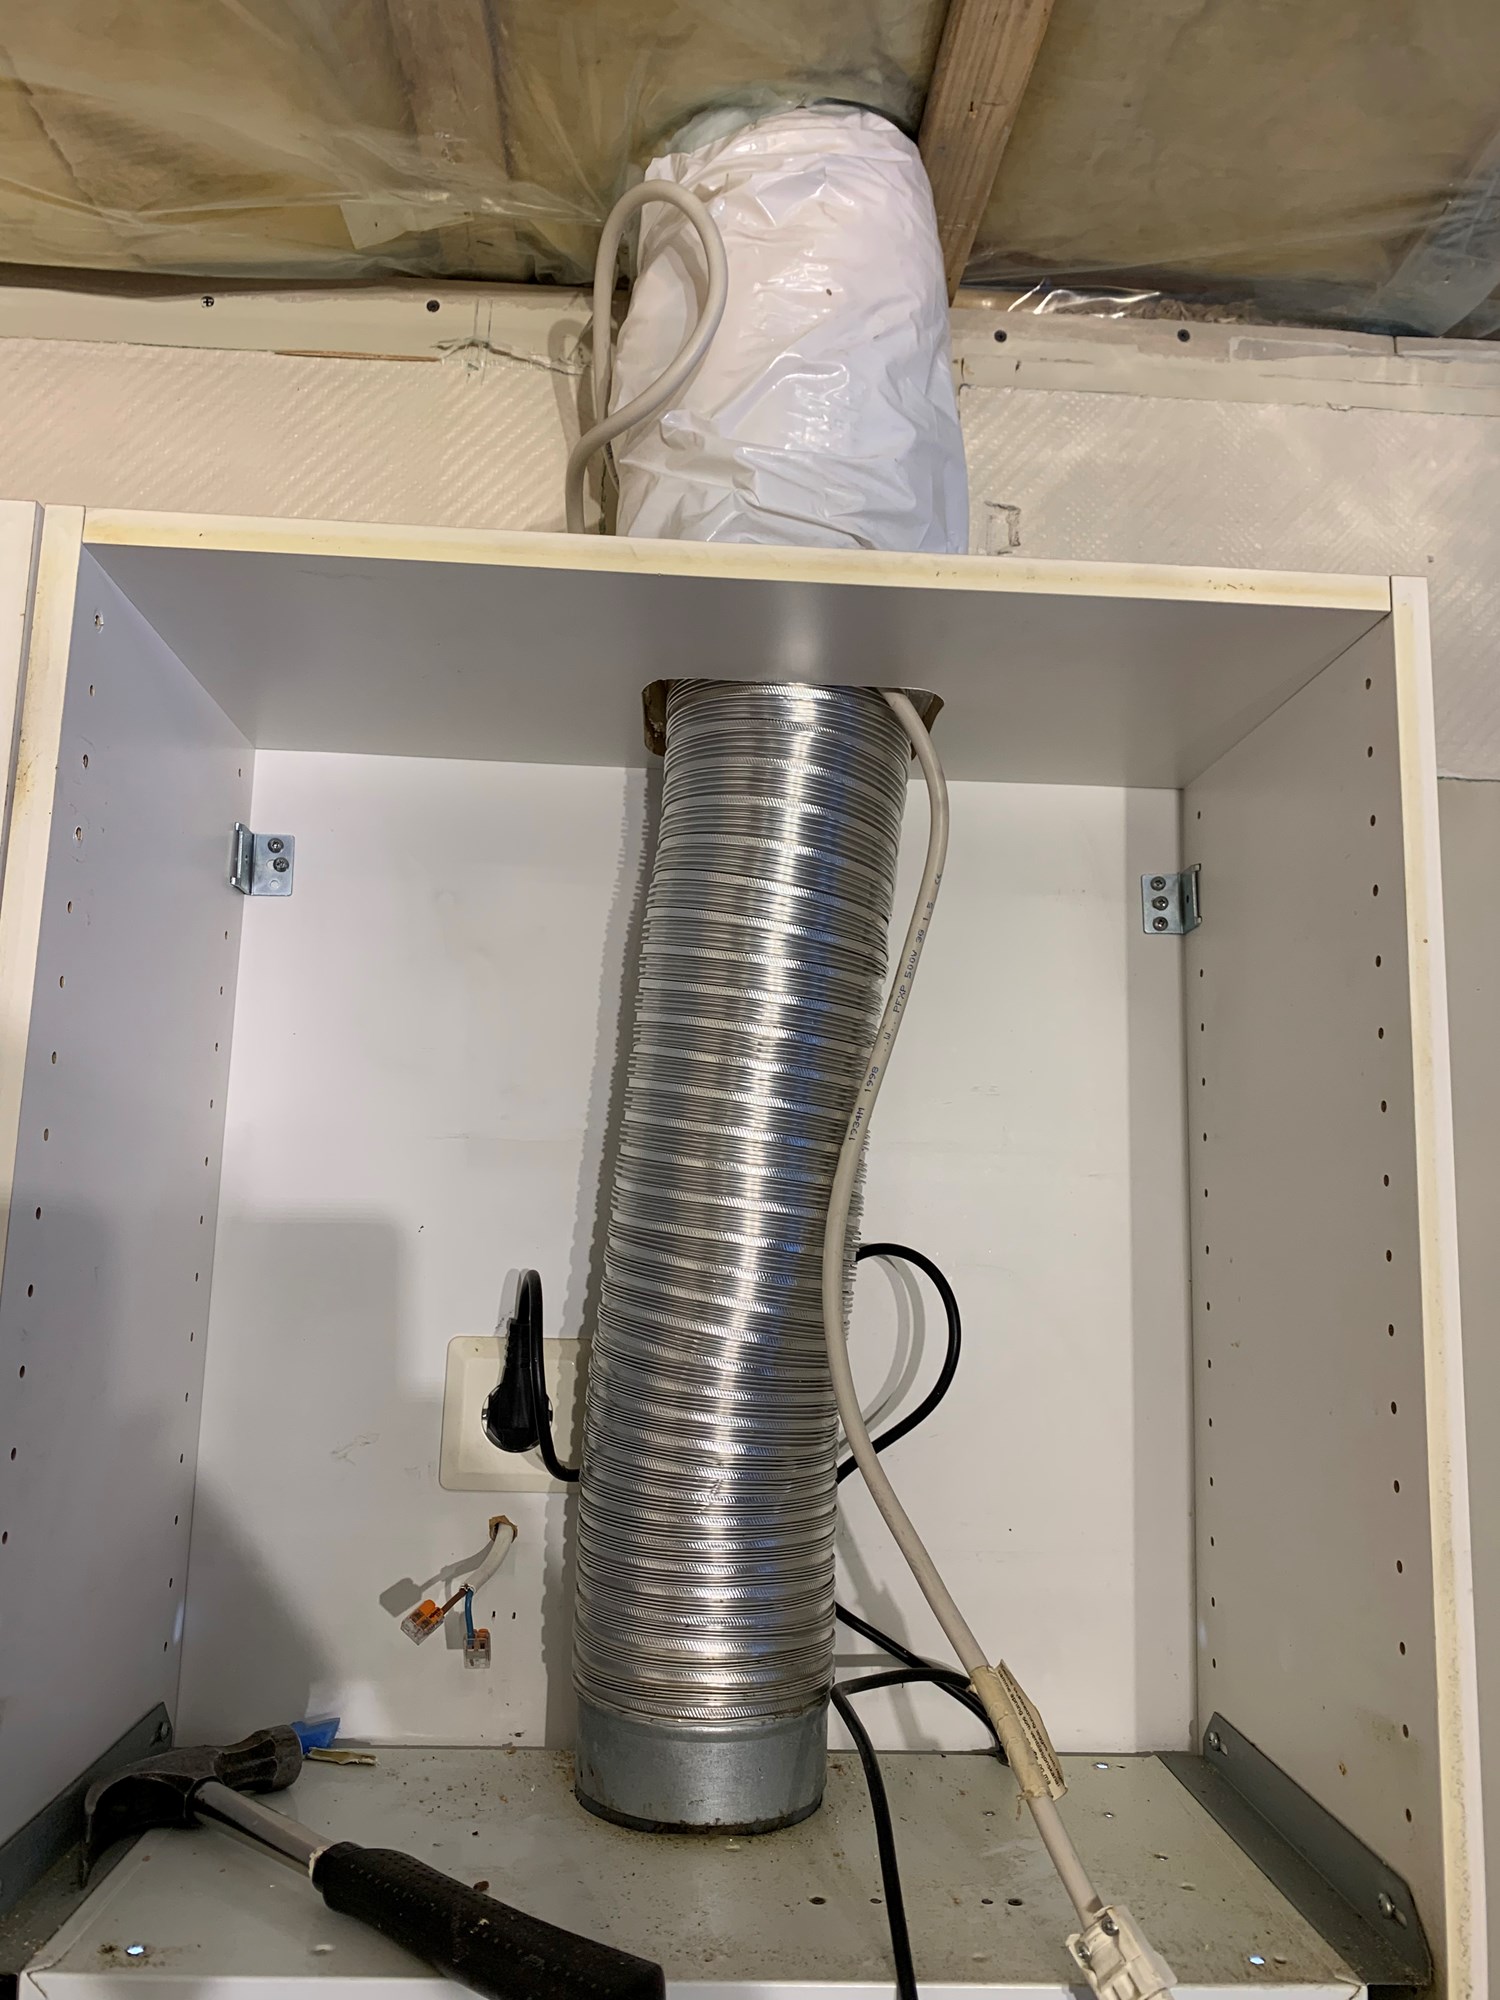 Kutte flexit loftsmotor til fordel for direkte avtrekk gjennom vegg på kjøkken - ventilator_1.jpg - paeltz